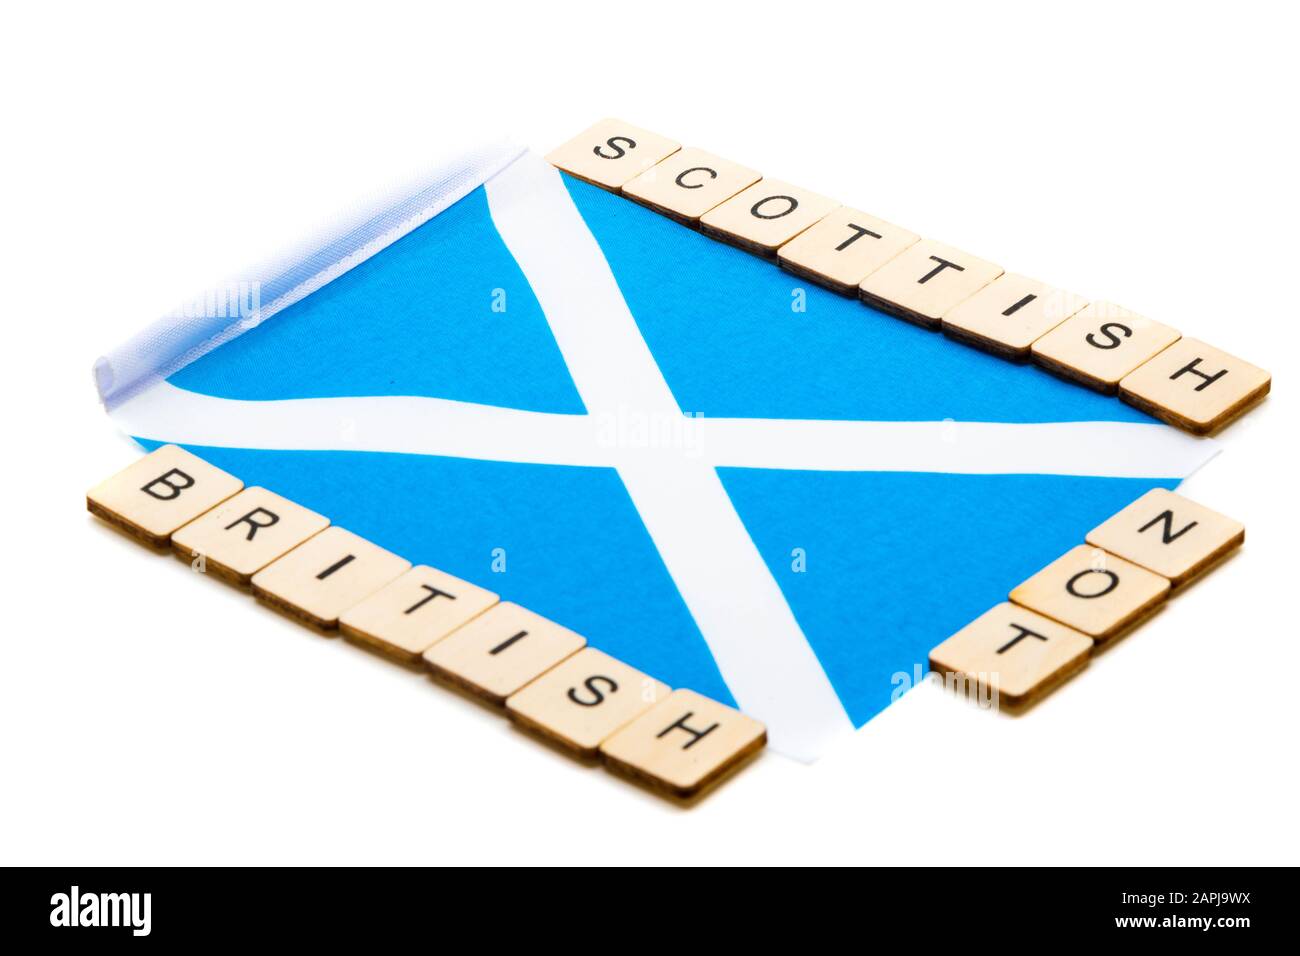 Die Nationalflaggen Schottlands, der Saltaire oder das Kreuz von St Andrews auf weißem Hintergrund mit einem Schild, das schottisch Und Nicht britisch liest Stockfoto